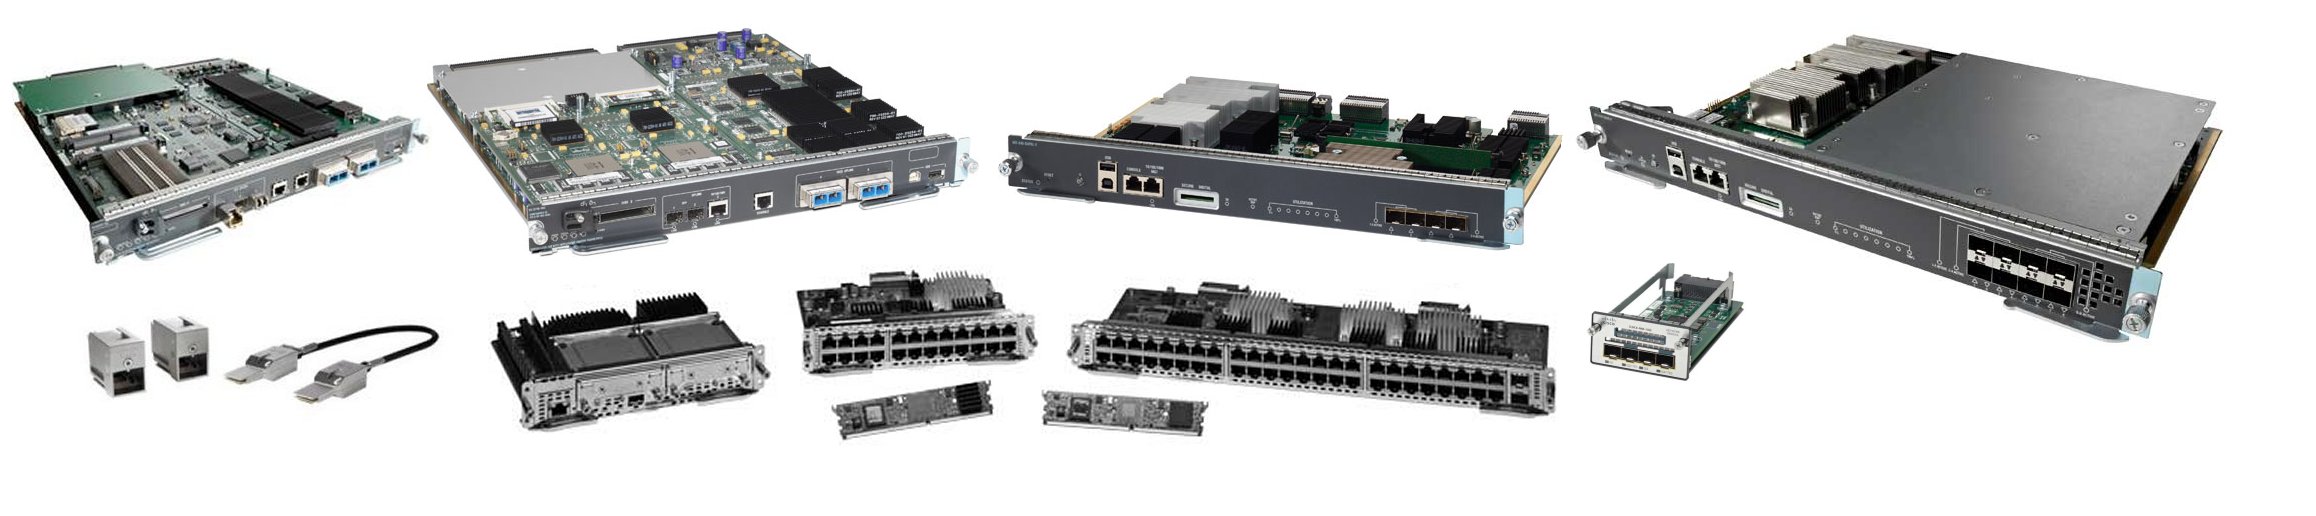 Cisco Cisco Switch Module 9-Port Expansion Module 10/100 Mbps 73-8475-06 